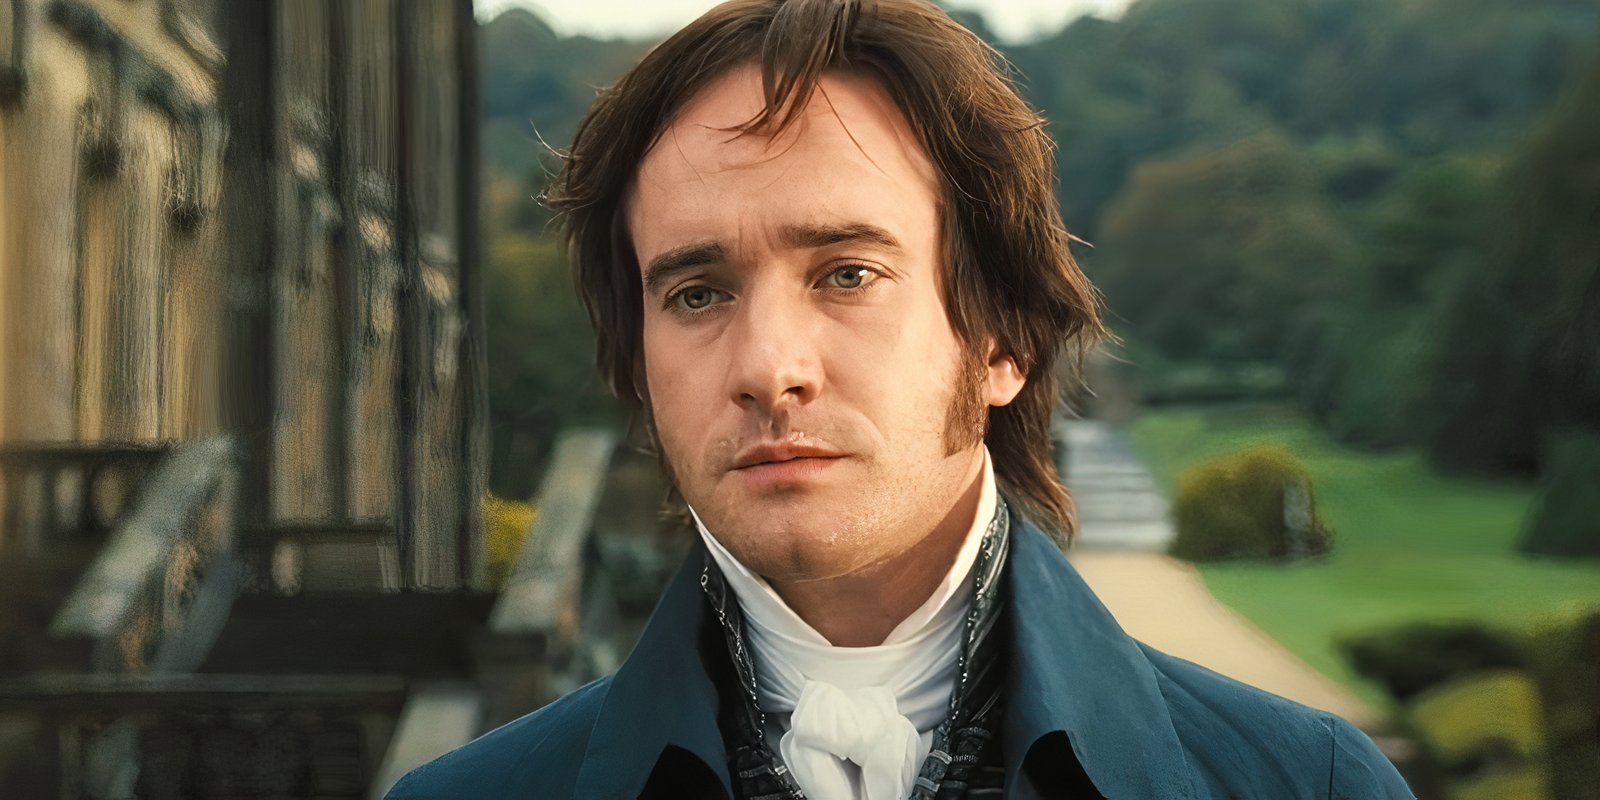 "Me sentí un poco fuera de lugar": la estrella de Mr. Darcy ofrece una reflexión honesta sobre su papel en Orgullo y prejuicio 20 años después